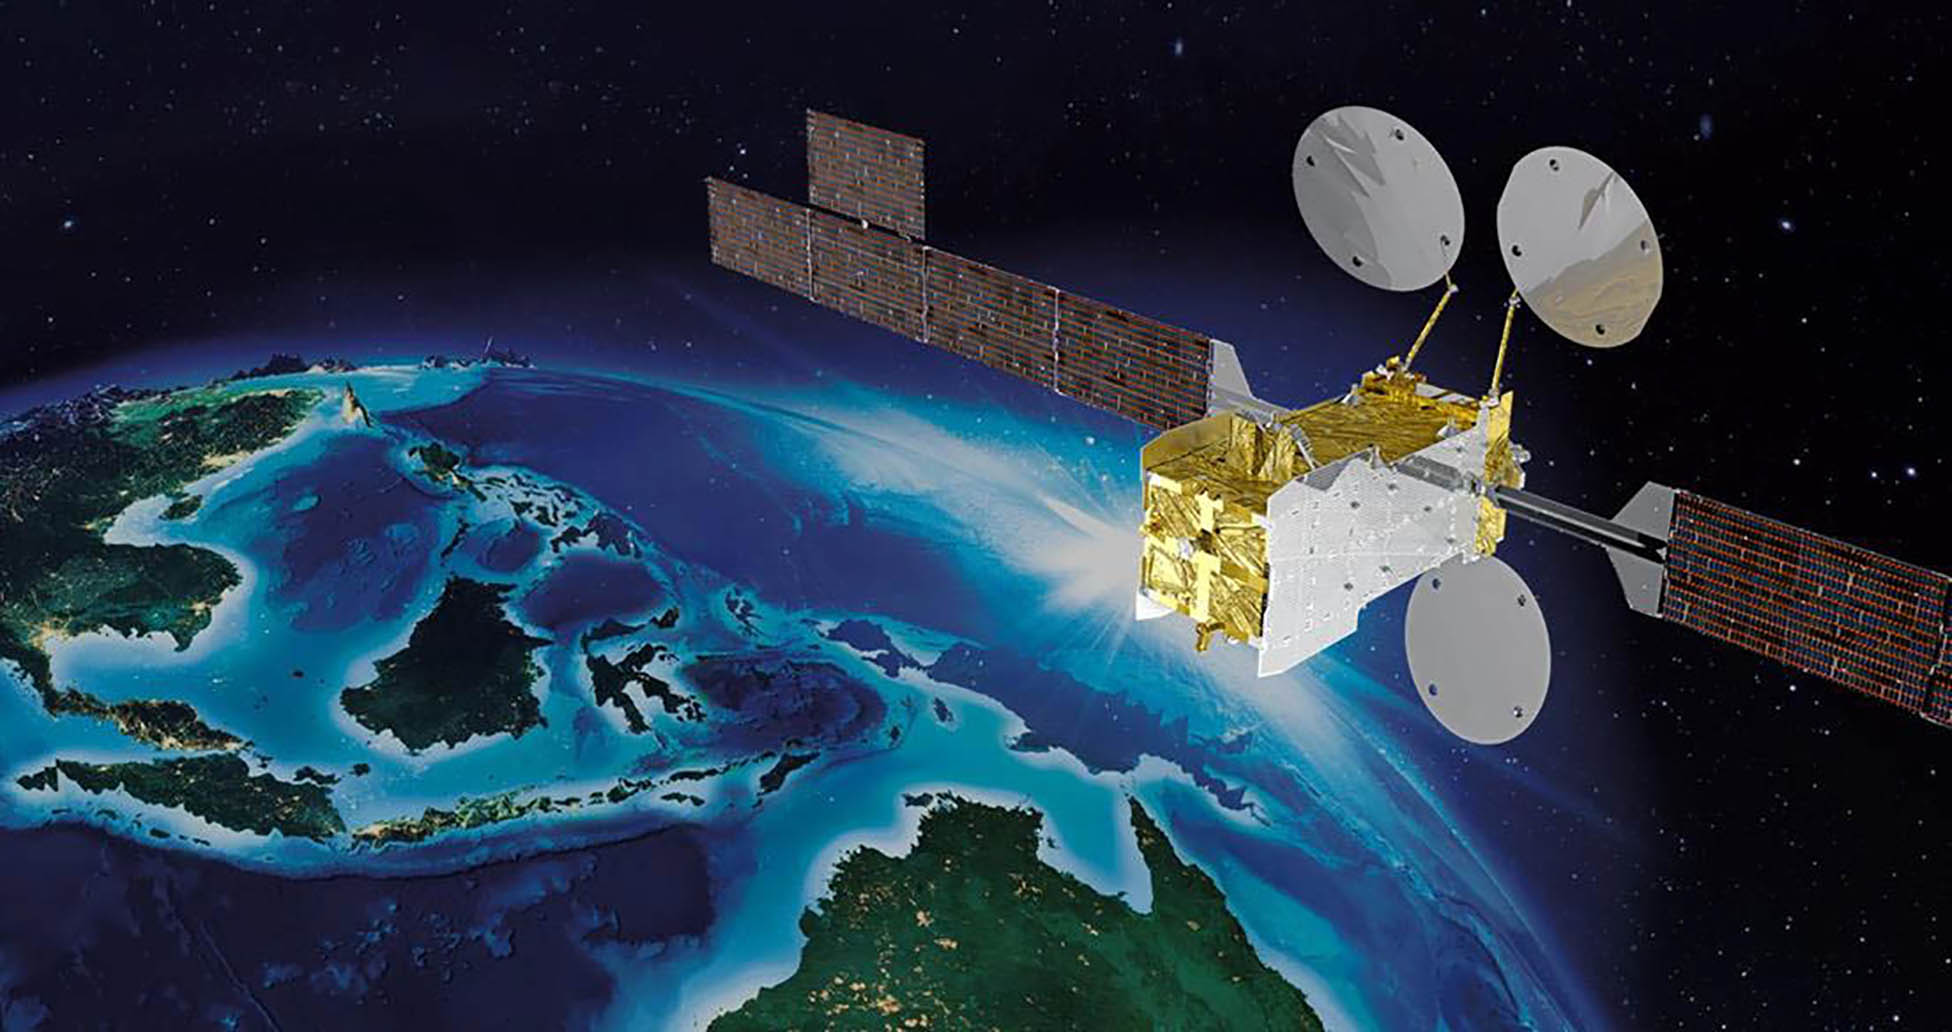 SATRIA-1 Berhasil Mengorbit, Tingkatkan Konektivitas Layanan Publik di Daerah 3T